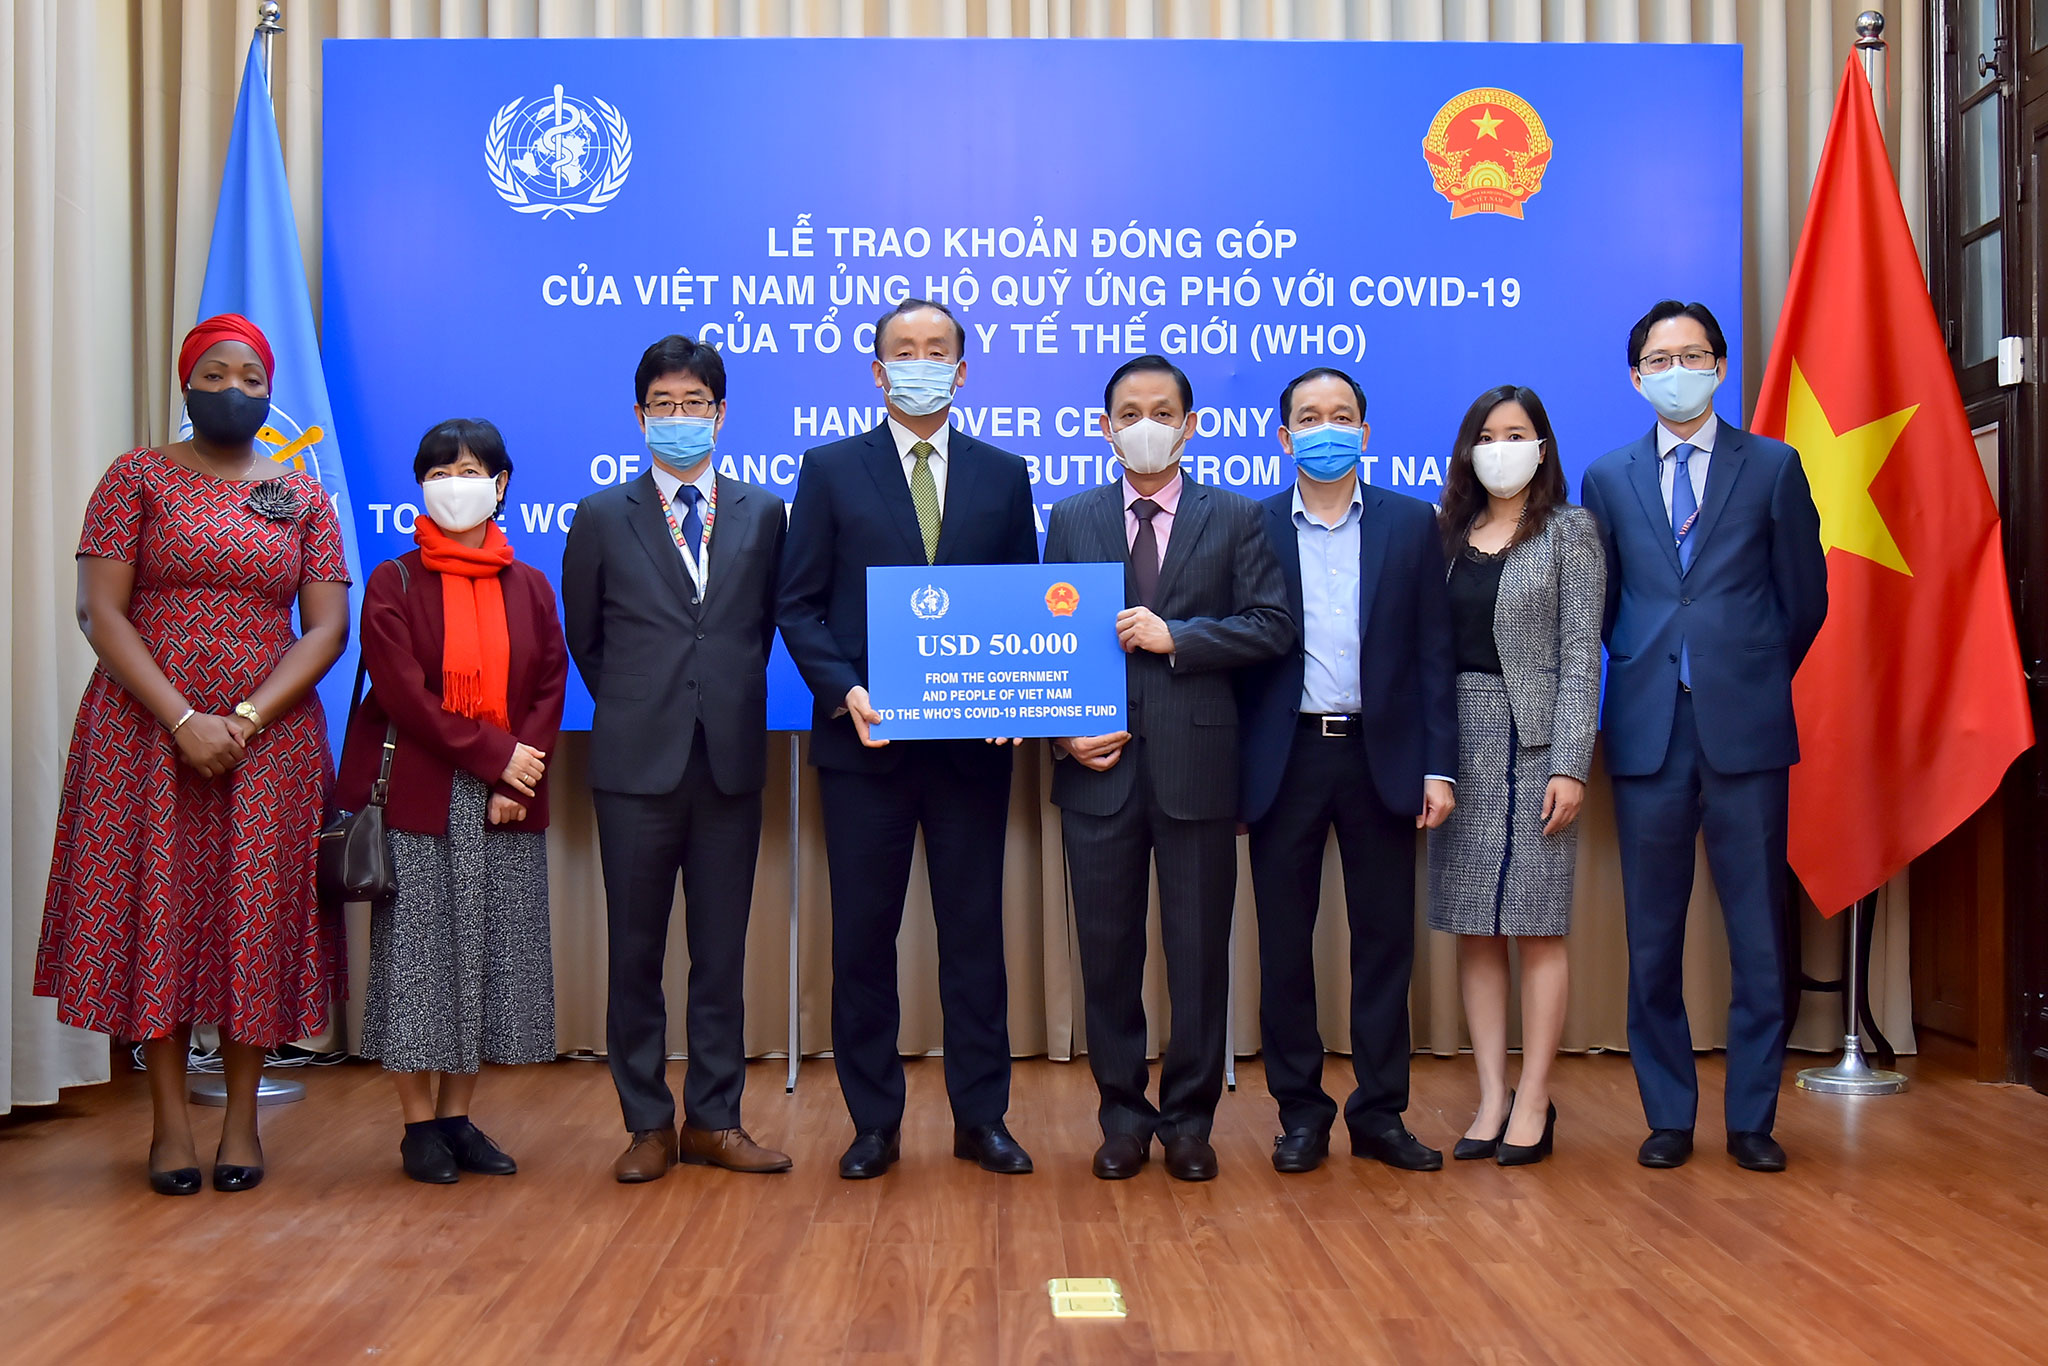 Thứ trưởng Bộ Ngoại giao Lê Hoài Trung trao tượng trưng khoản đóng góp 50.000 đô la Mỹ của Chính phủ và nhân dân Việt Nam ủng hộ Quỹ ứng phó với Covid-19 của Tổ chức Y tế thế giới (WHO).